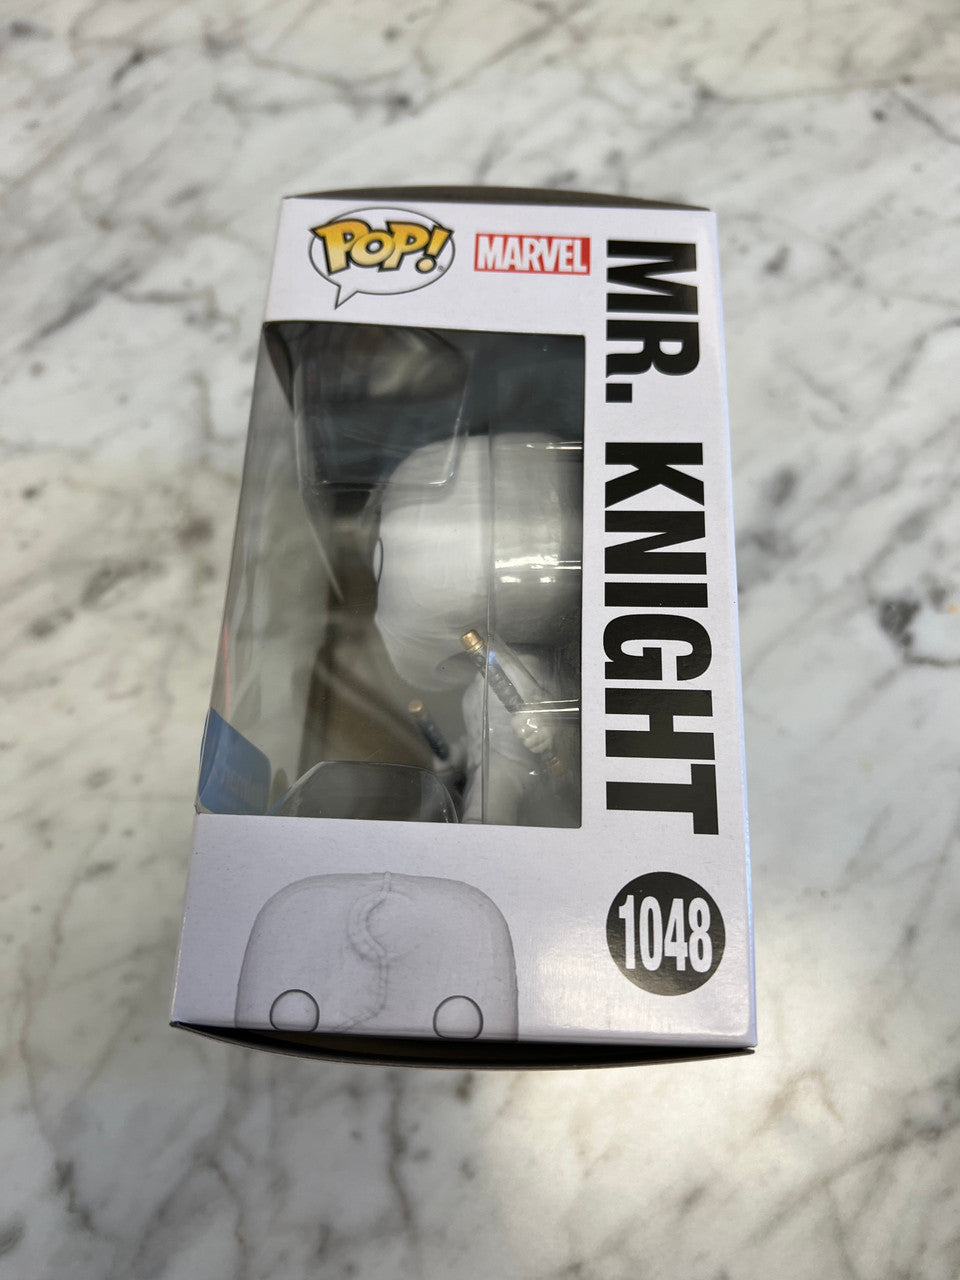 Funko Pop - Mr Knight #1048 Moon Knight Walmart Exclusive Glow